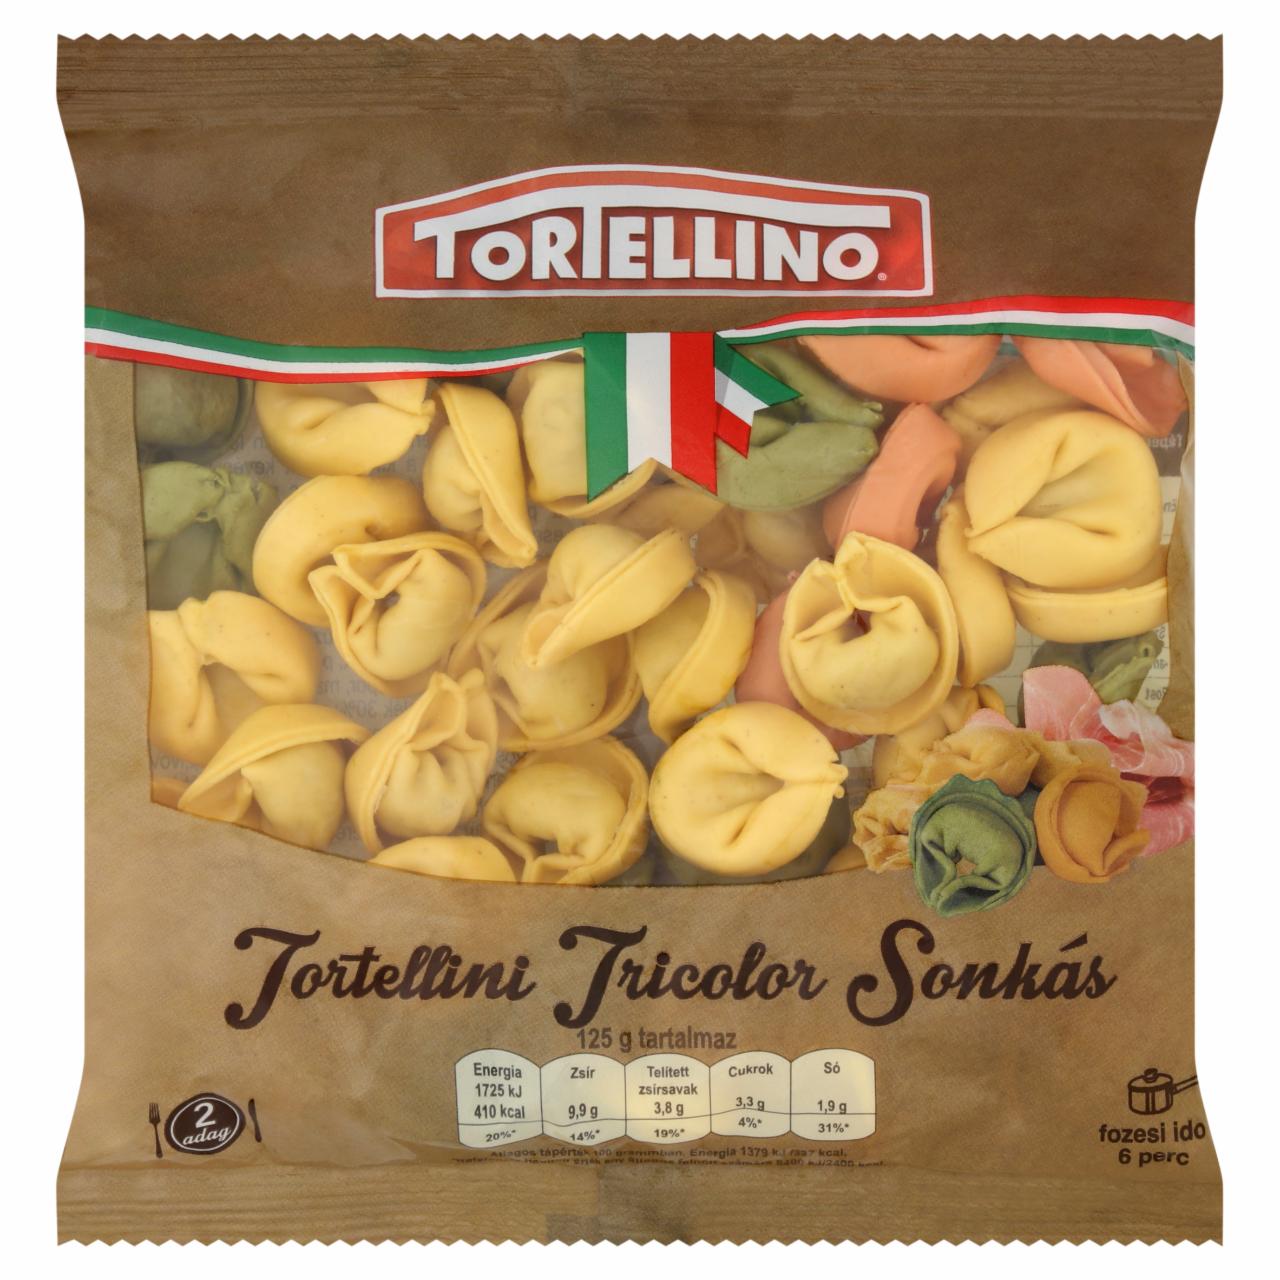 Képek - Tortellino Tortellini Tricolor sonkás friss tészta 250 g